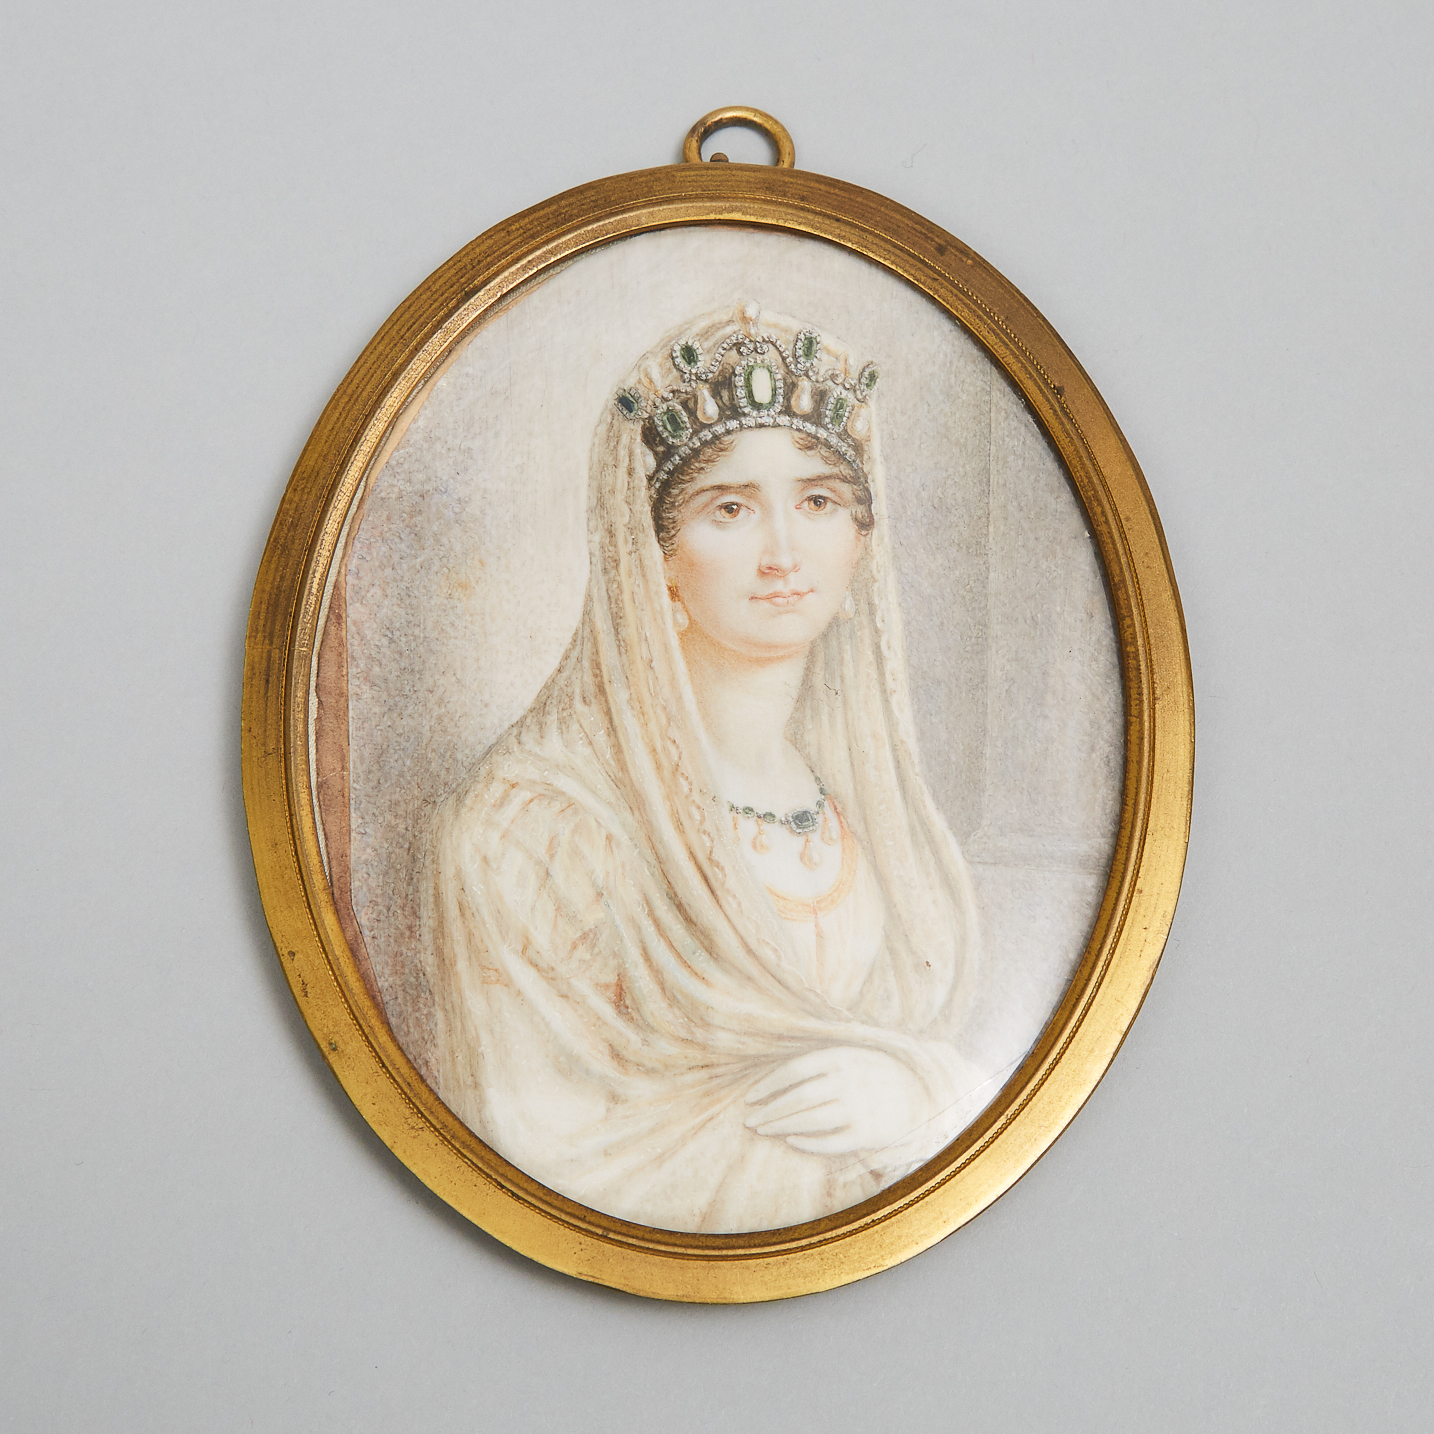 French School Portrait Miniature of Empress Joséphine de Beauharnais, 19th cneuty